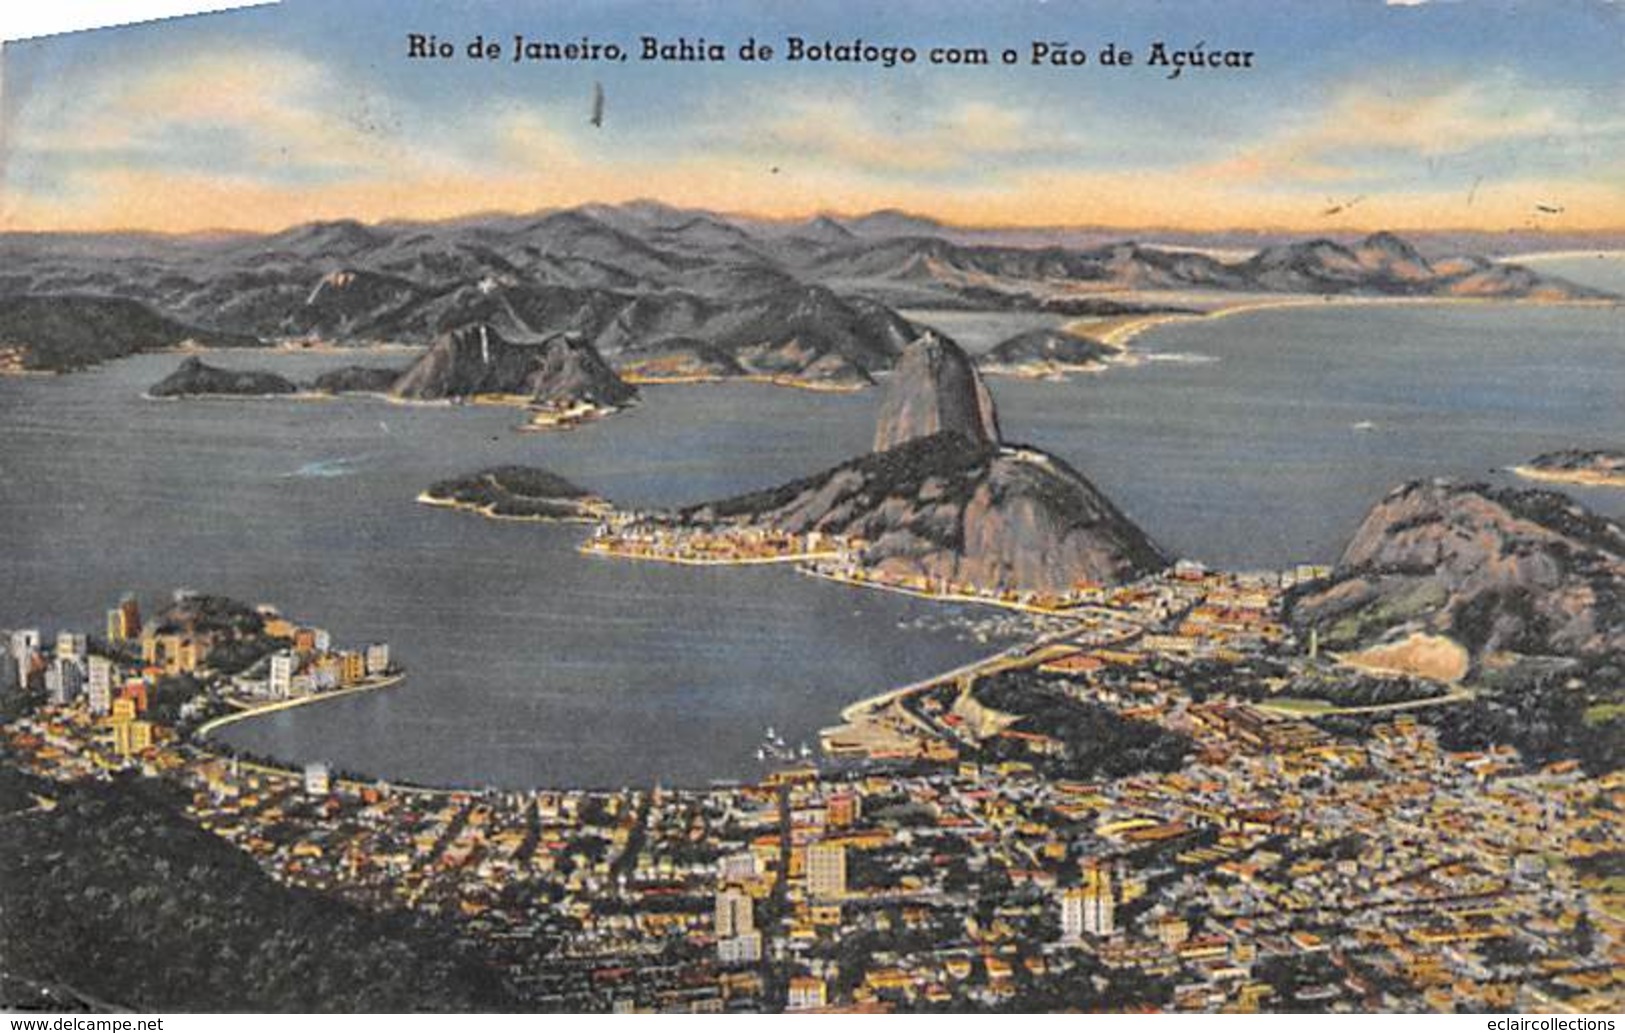 Brazil. Brésil.   Un lot de 46 cartes   Rio de Janeiro et divers  dont 4/5 cartes état moyen  (voir scan)